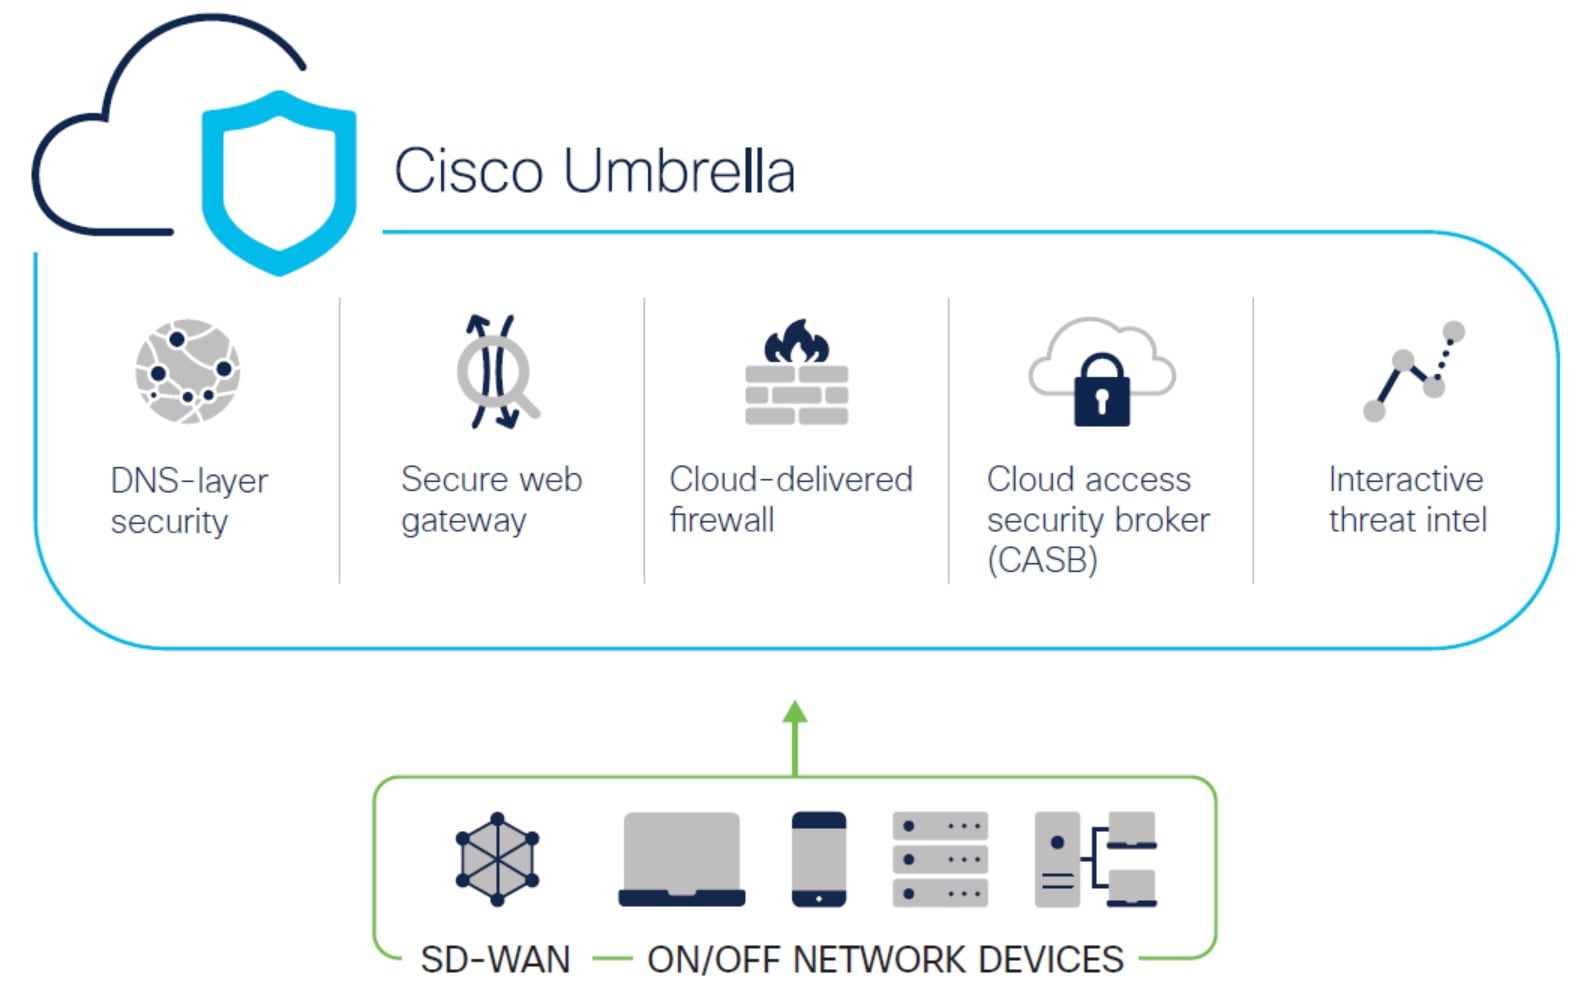 이 이미지는 Cisco Umbrella를 보여줍니다.